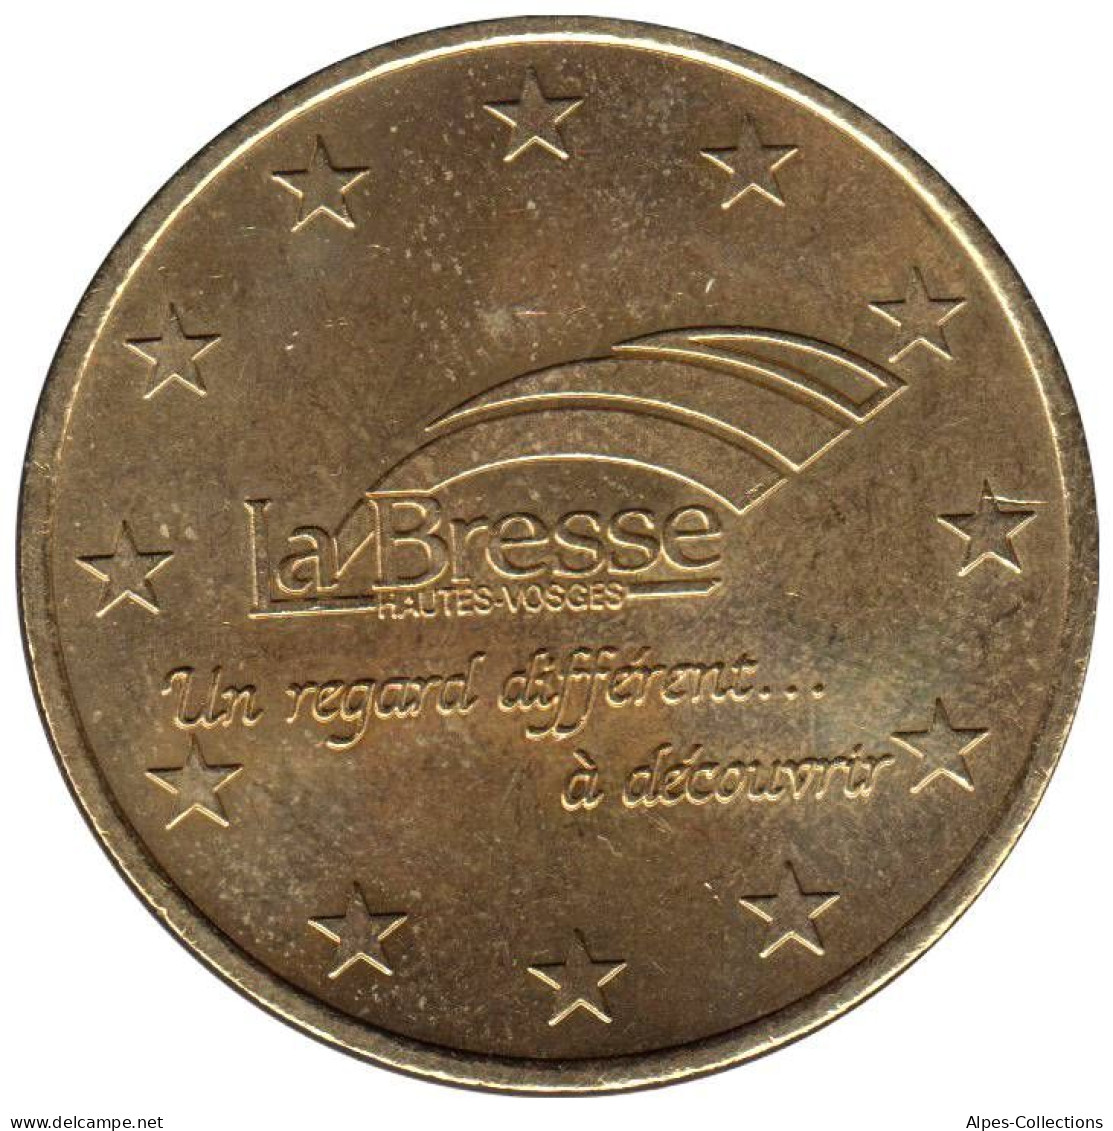 LA BRESSE - EU0010.1 - 1 EURO DES VILLES - Réf: T304 - 1997 - Euro Delle Città